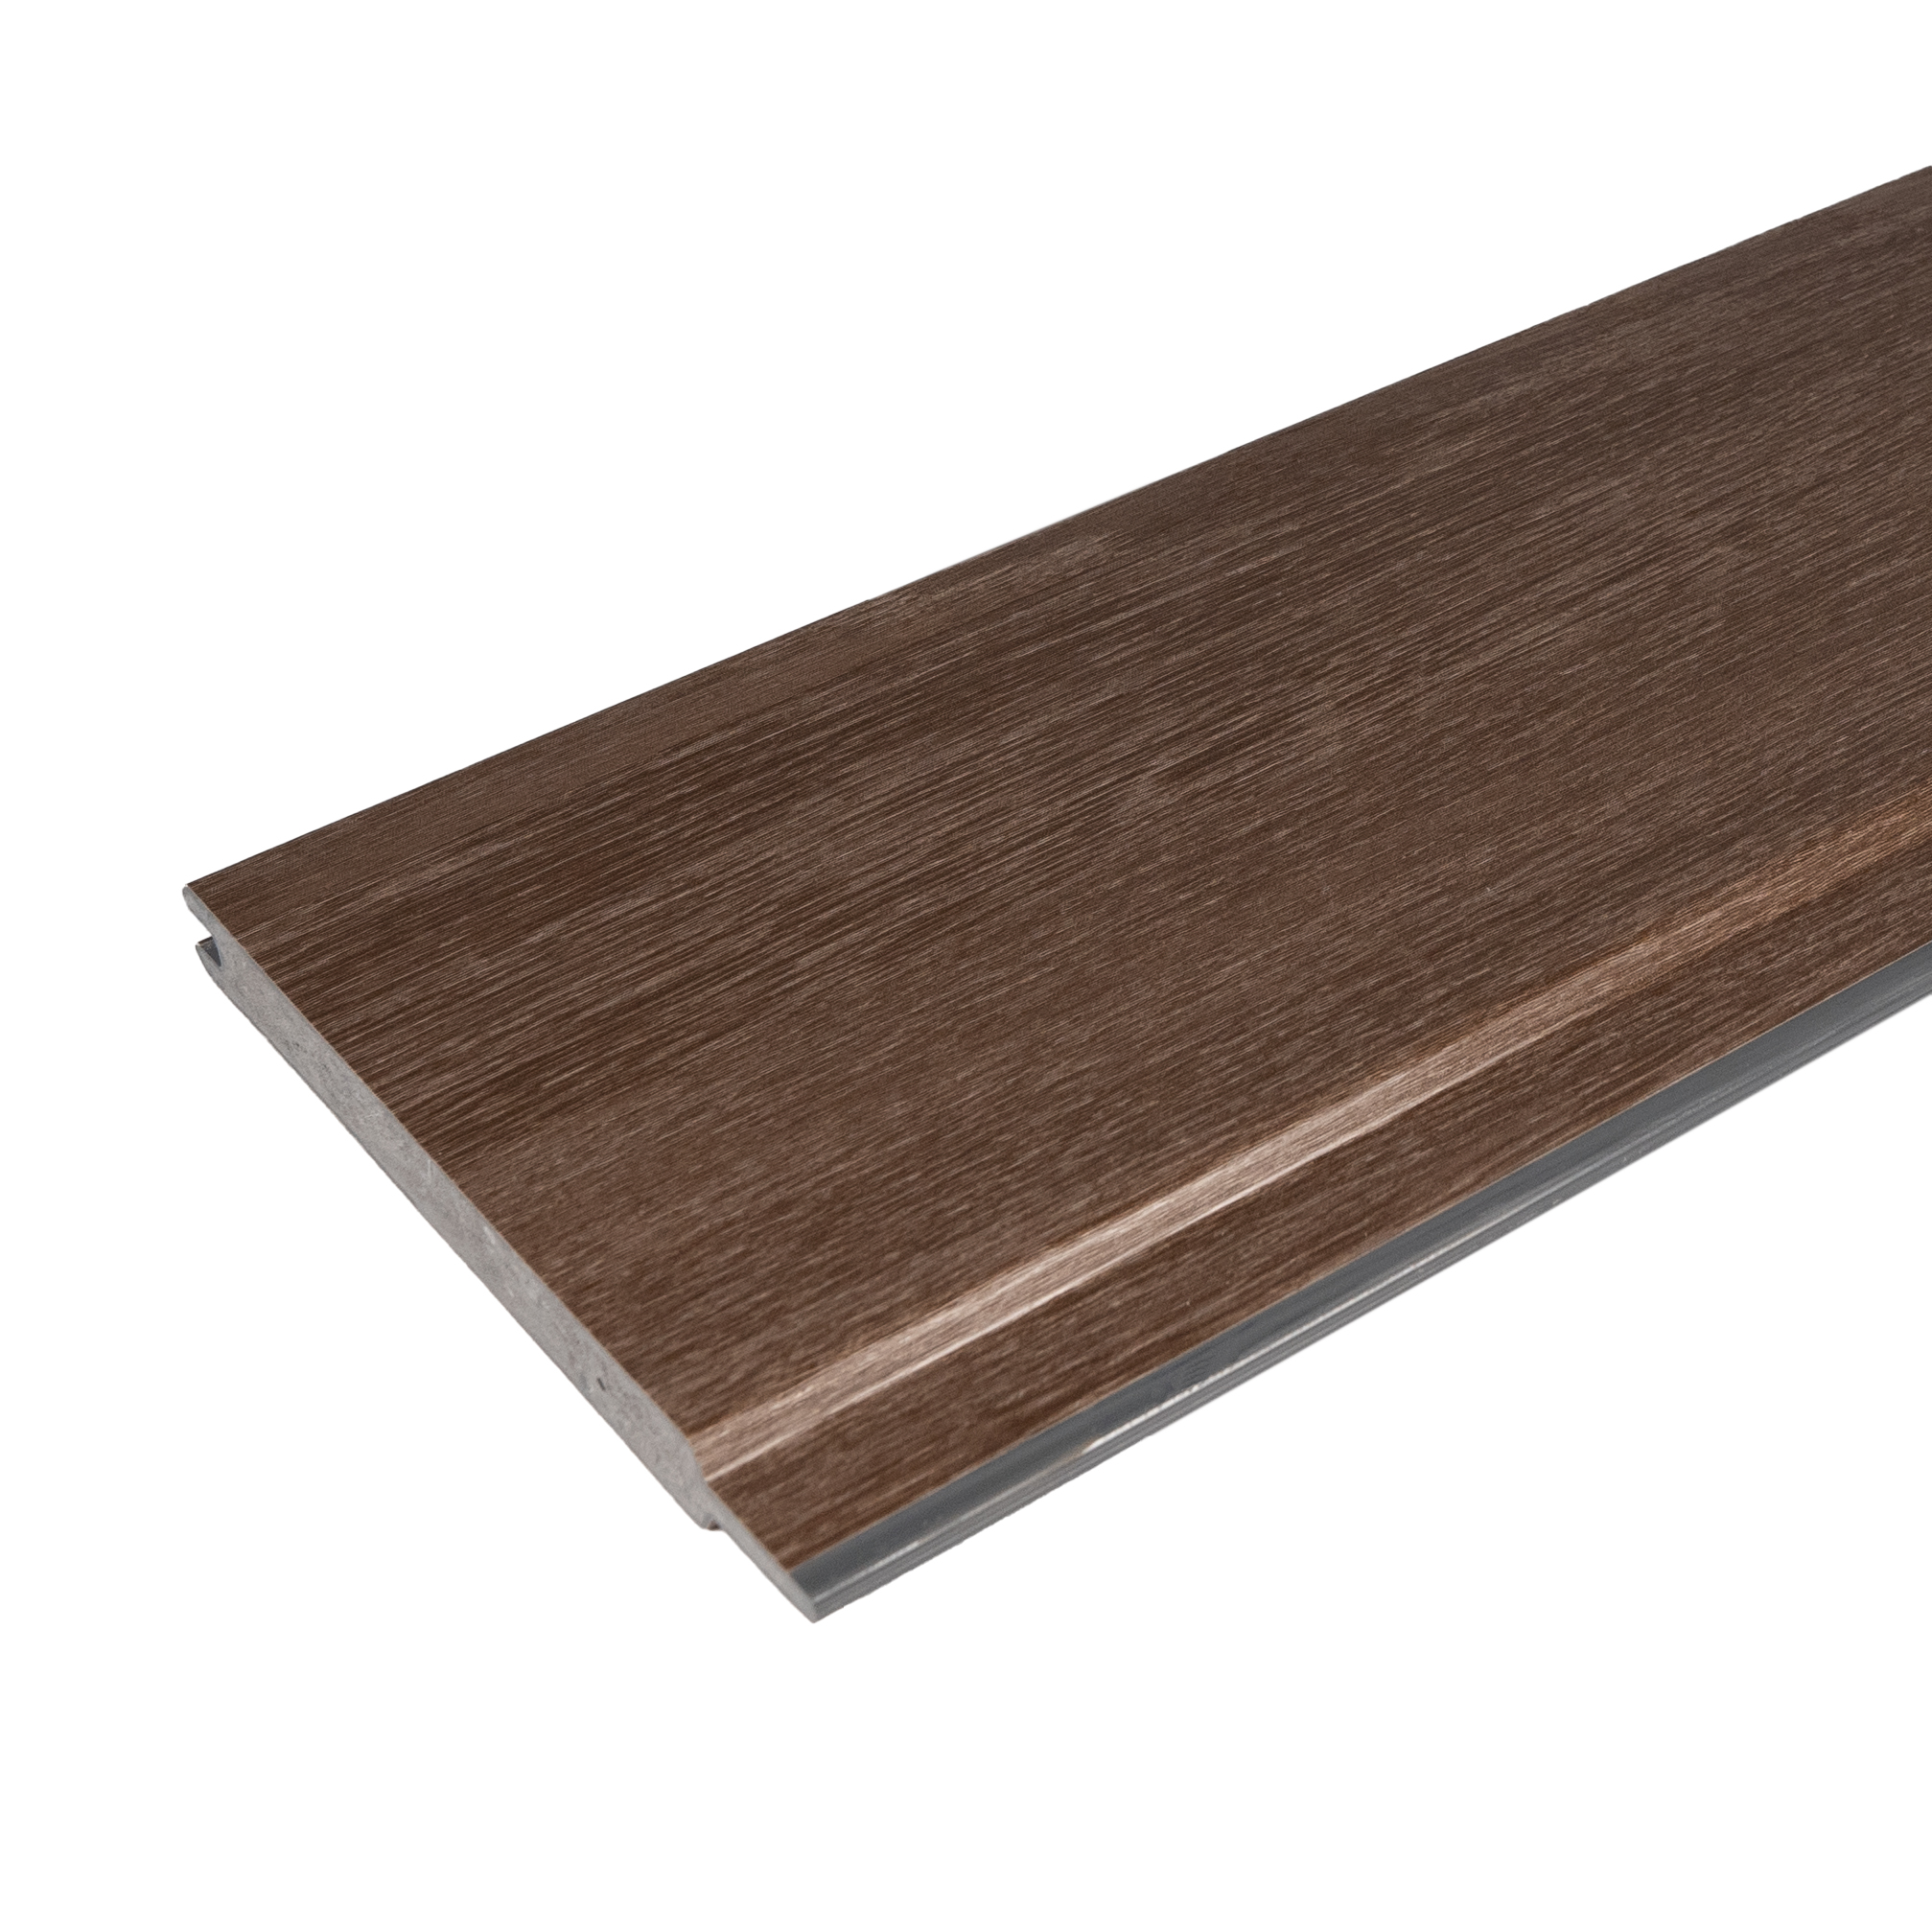 Torfüllung Kunststoff Sheffield Oak Brown - Massiv Kunststoffbretter für Tore, Türen & Zäune 143 x 15 mm